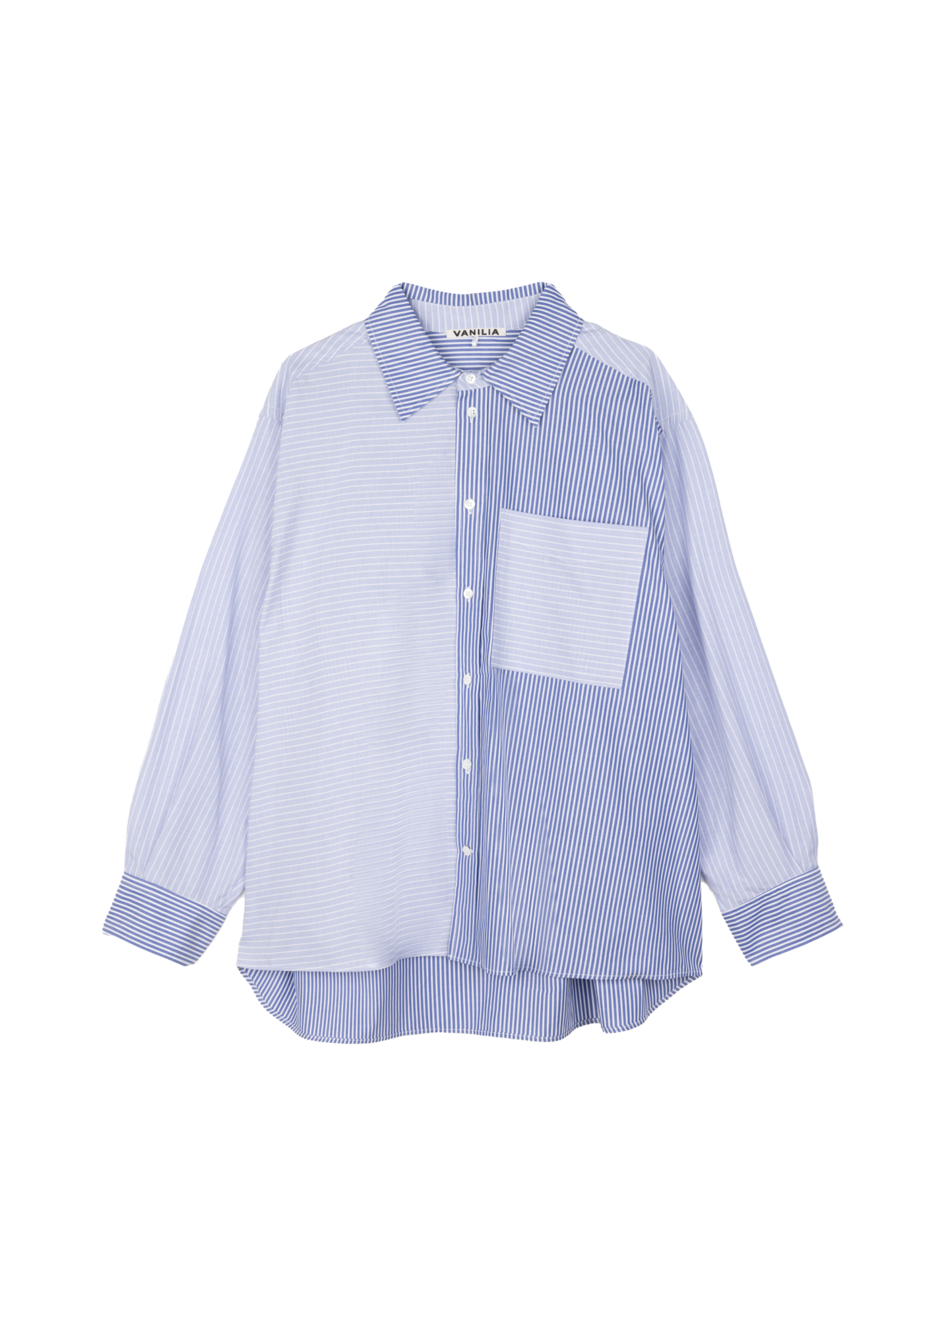 Aanbieding van Double striped poplin blouse voor 139,95€ bij Vanilia